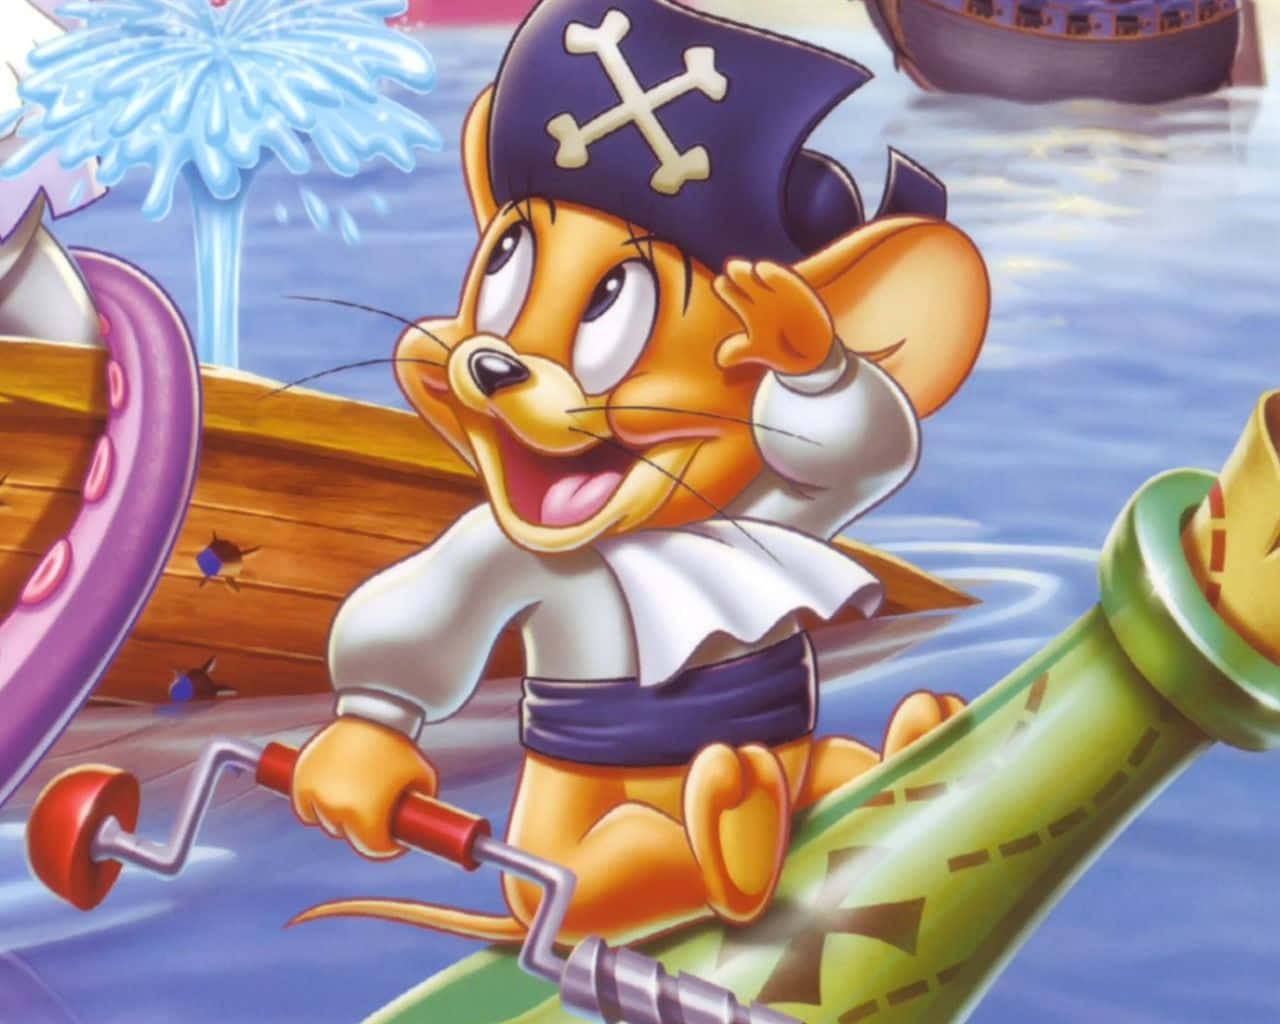 Einecartoon-maus In Einem Piratenkostüm Fährt Mit Einem Boot.